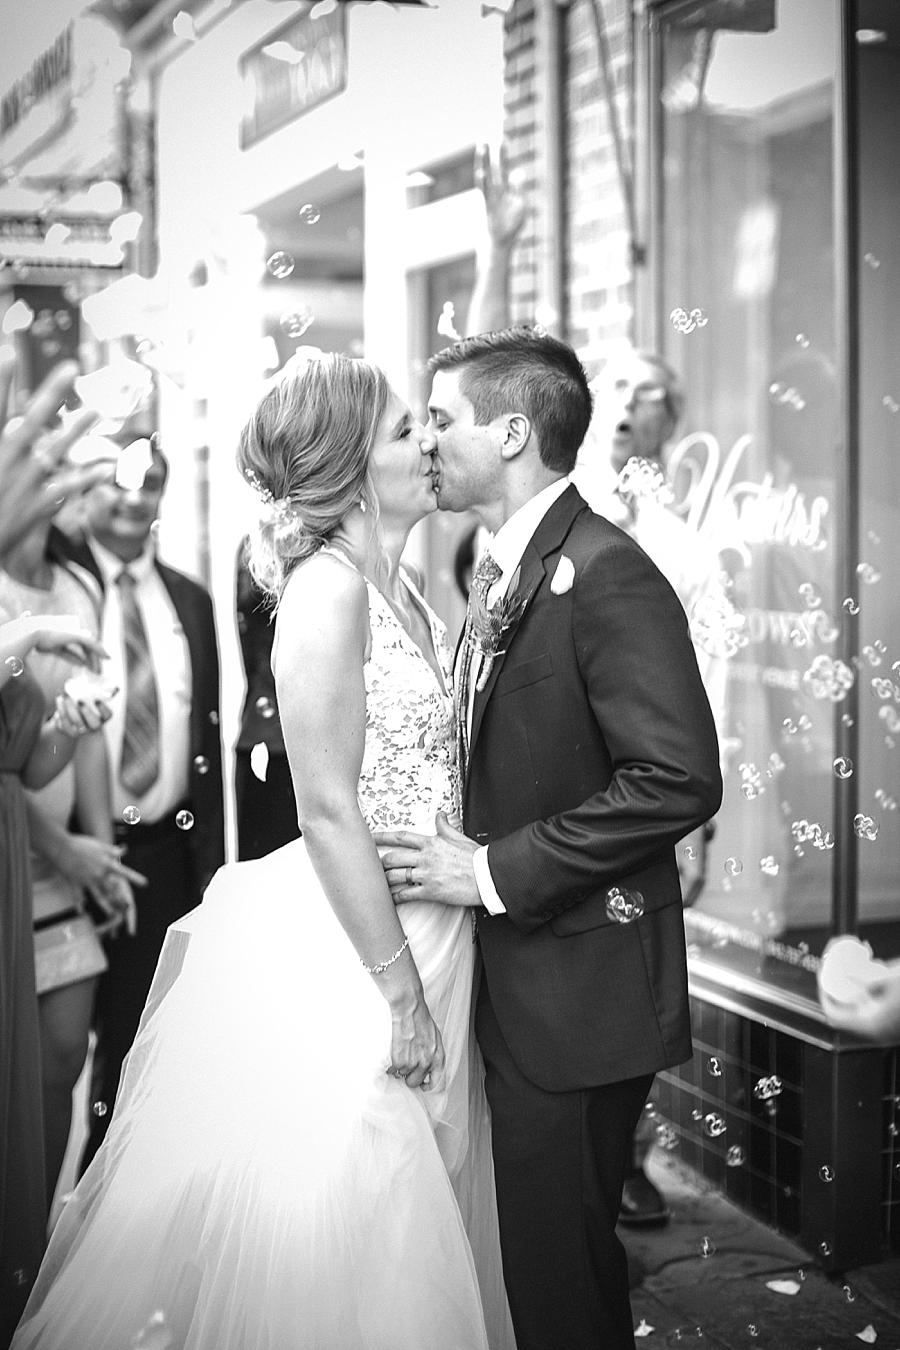 Kiss goodbye at this Upstairs at Midtown Wedding by Knoxville Wedding Photographer, Amanda May Photos.